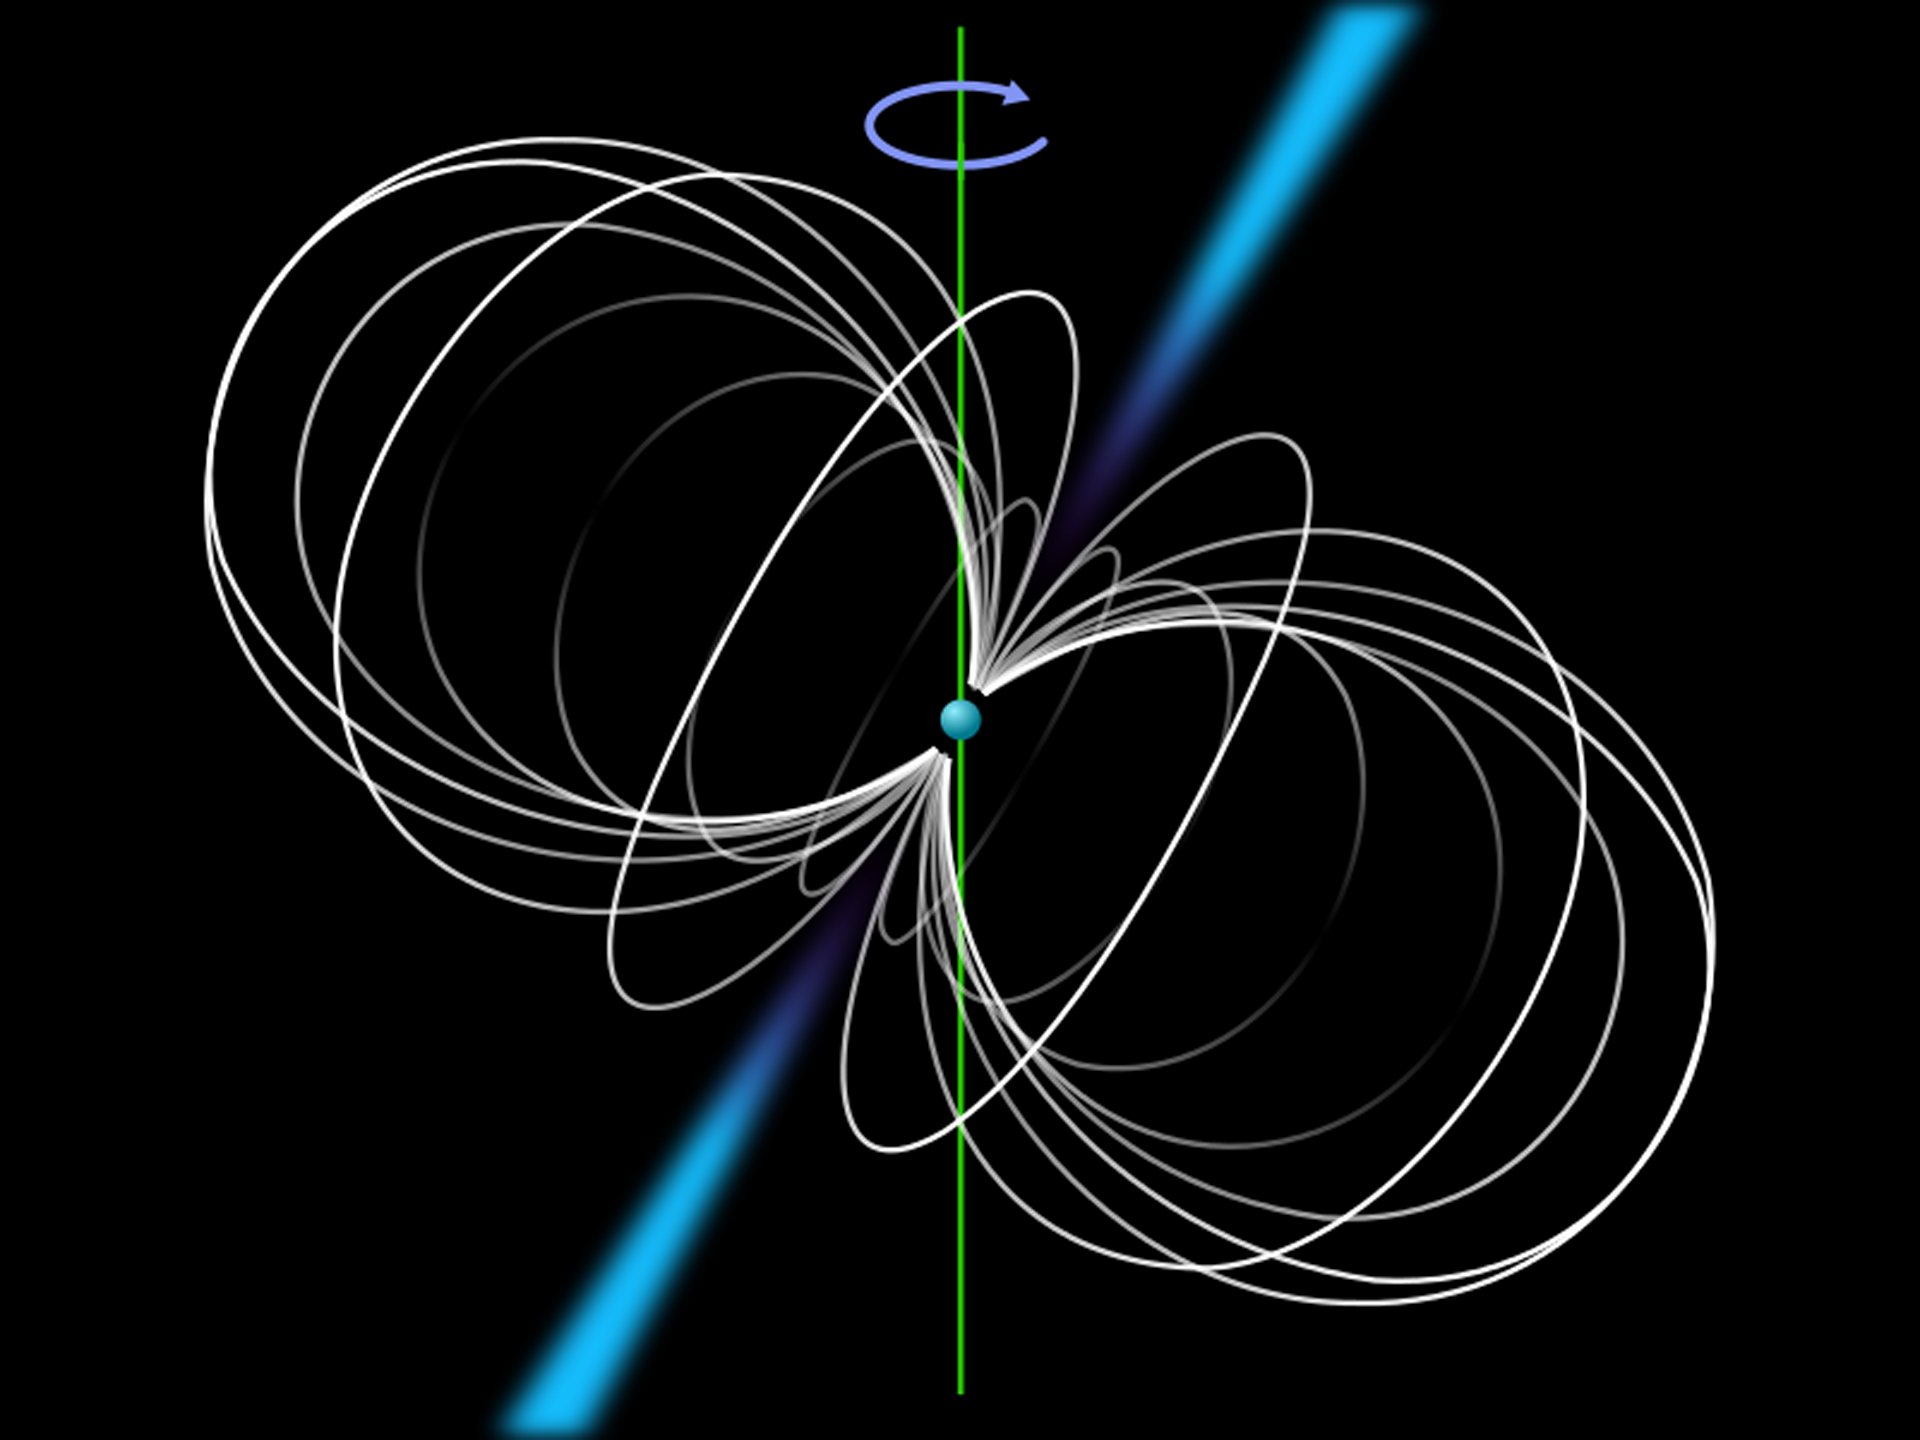 Rys. 1. Rysunek przedstawia, w jaki sposób promieniowanie elektromagnetyczne emitowane jest przez gwiazdę neutronową z biegunów magnetycznych i skupione w wąskich wiązkach. W centralnej części rysunku umieszczono niebieską kulkę, przez którą przechodzi pionowa, zielona oś z zaznaczonym kierunkiem obrotu, zgodnie z ruchem wskazówek zegara. Również centrycznie, ale nieco odchylona w prawo, zaznaczona jest druga oś, wokół której wirują jasne okręgi. Jednocześnie są styczne do siebie nawzajem i przebiegają przez środek niebieskiej kulki. Te okręgi to wiązki, które omiatają przestrzeń wskutek wirowania gwiazdy.